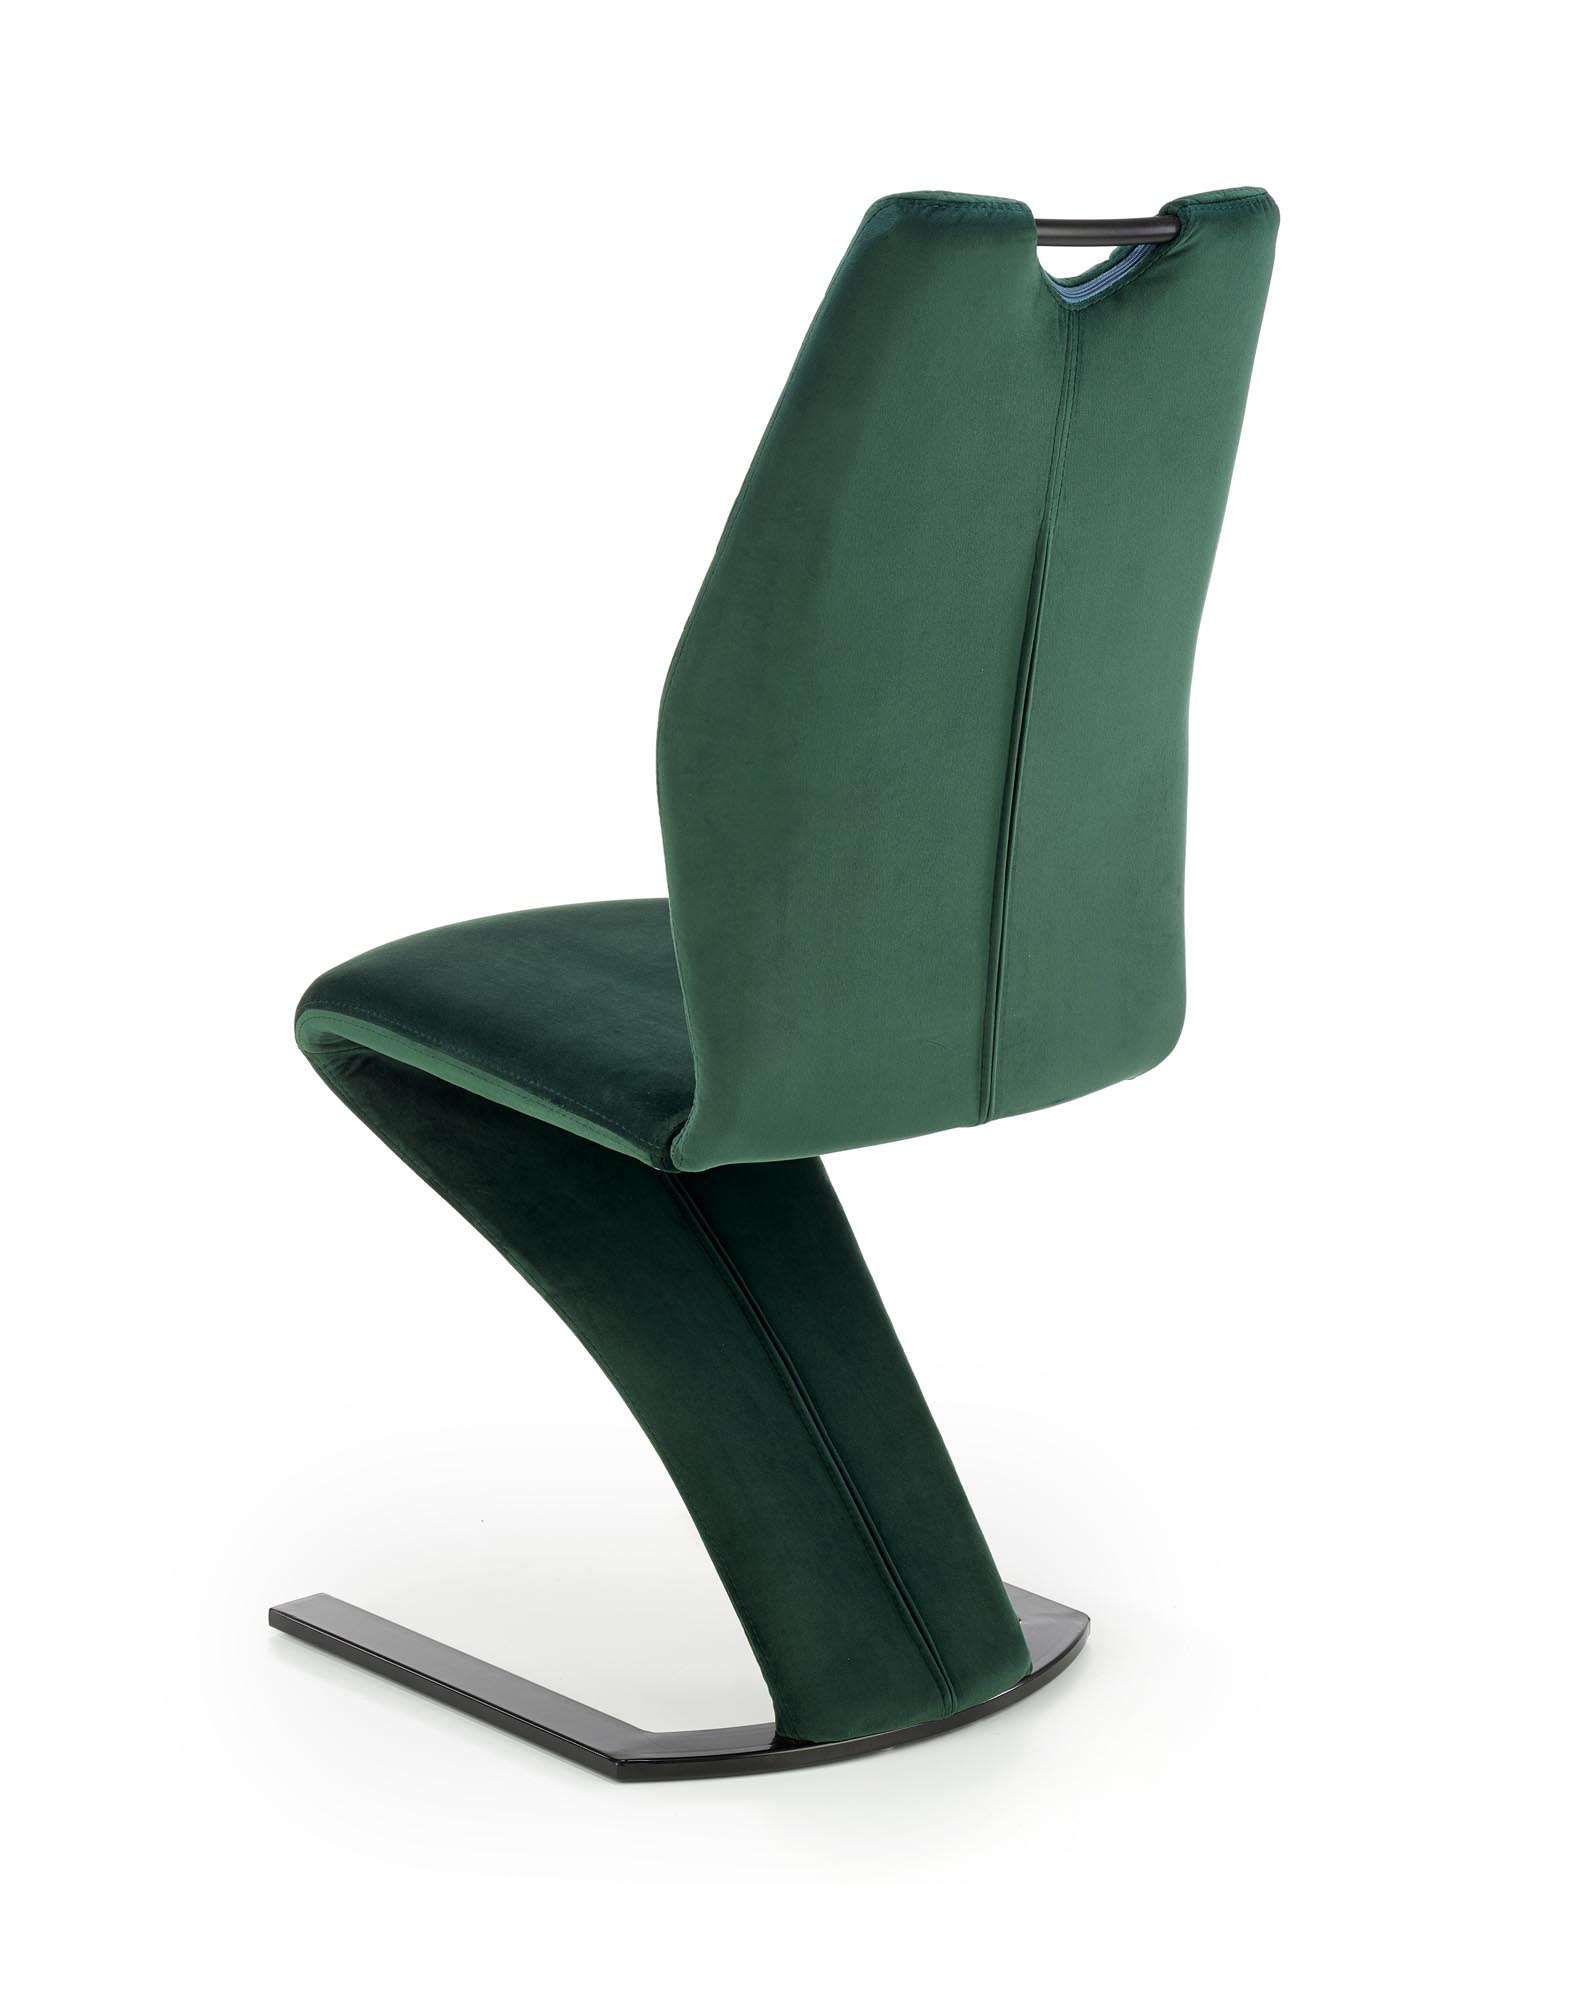 K442 krzesło ciemny zielony k442 krzesło ciemny zielony